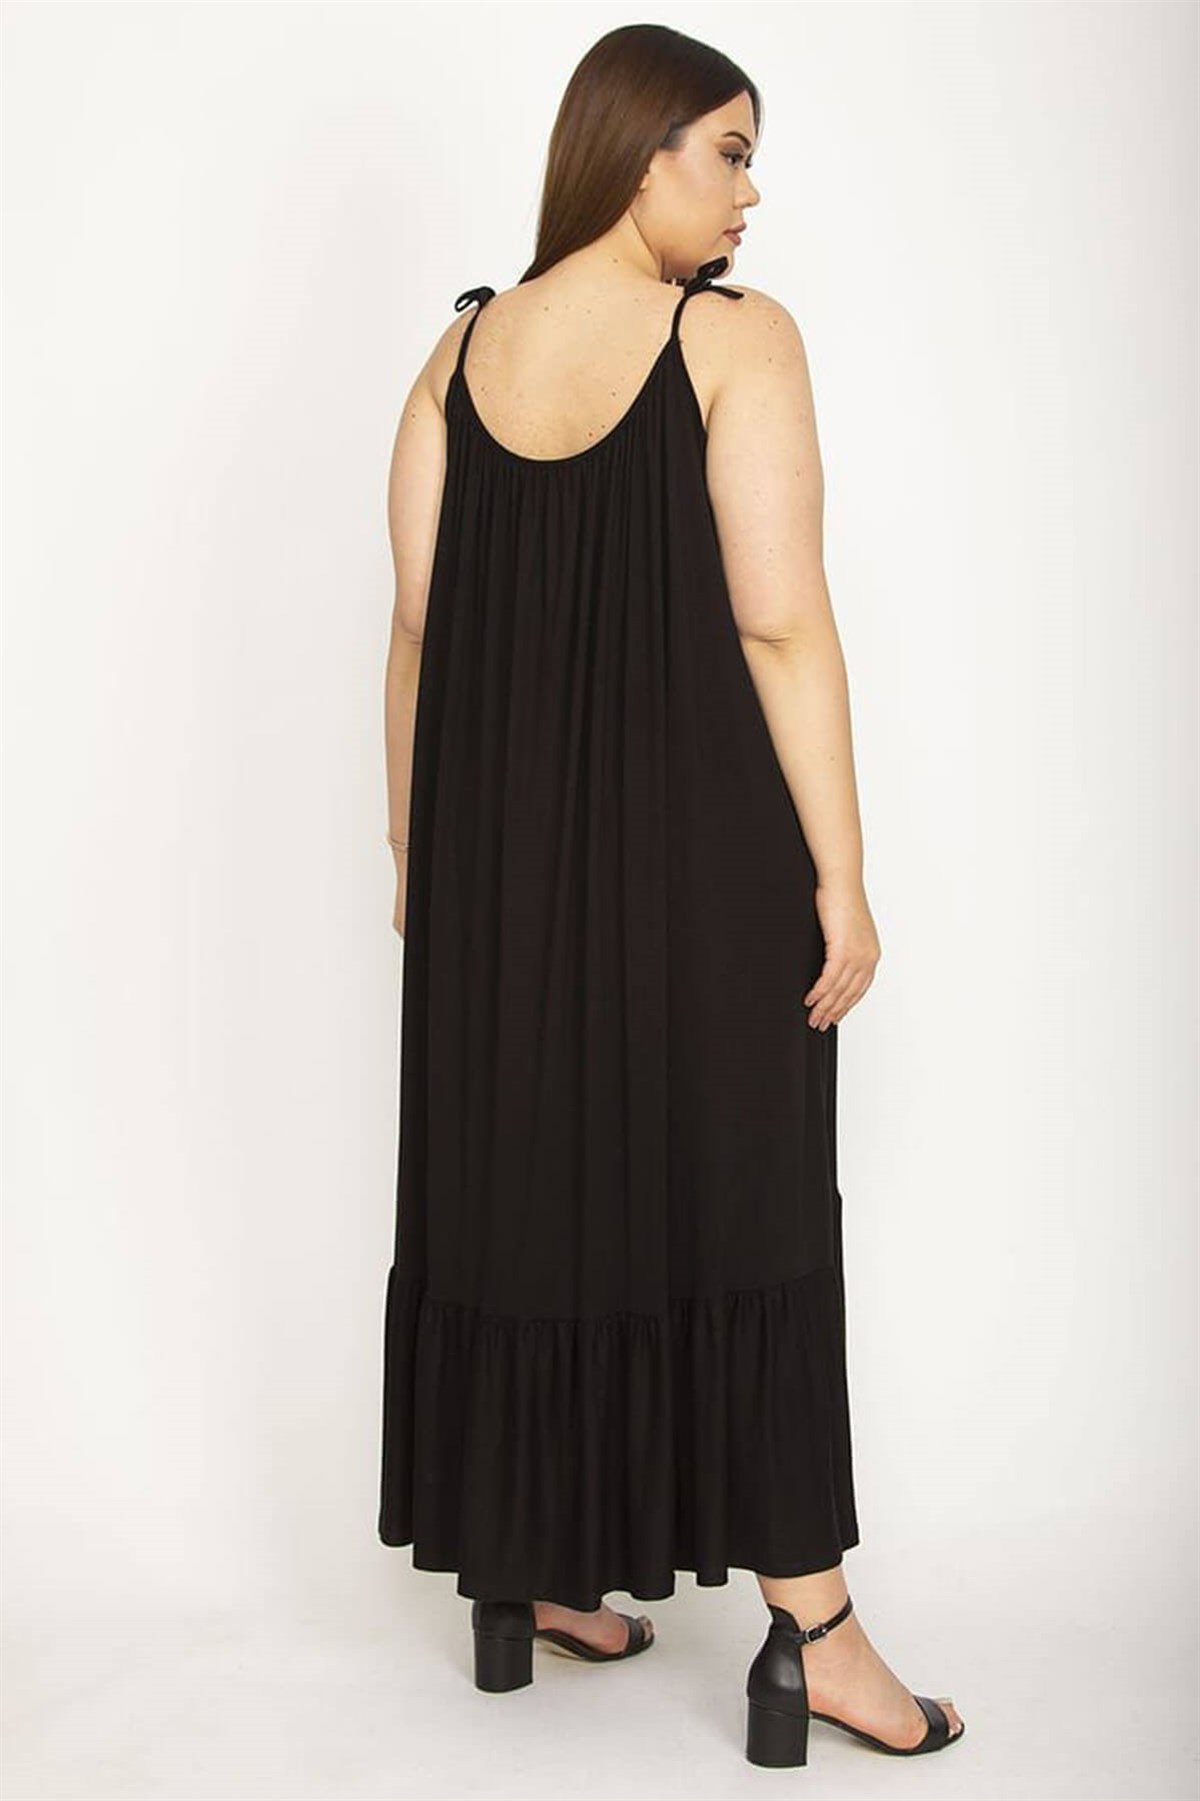 Kadın Büyük Beden Yazlık Mayo Üstüne Elbise|Heves Giyim